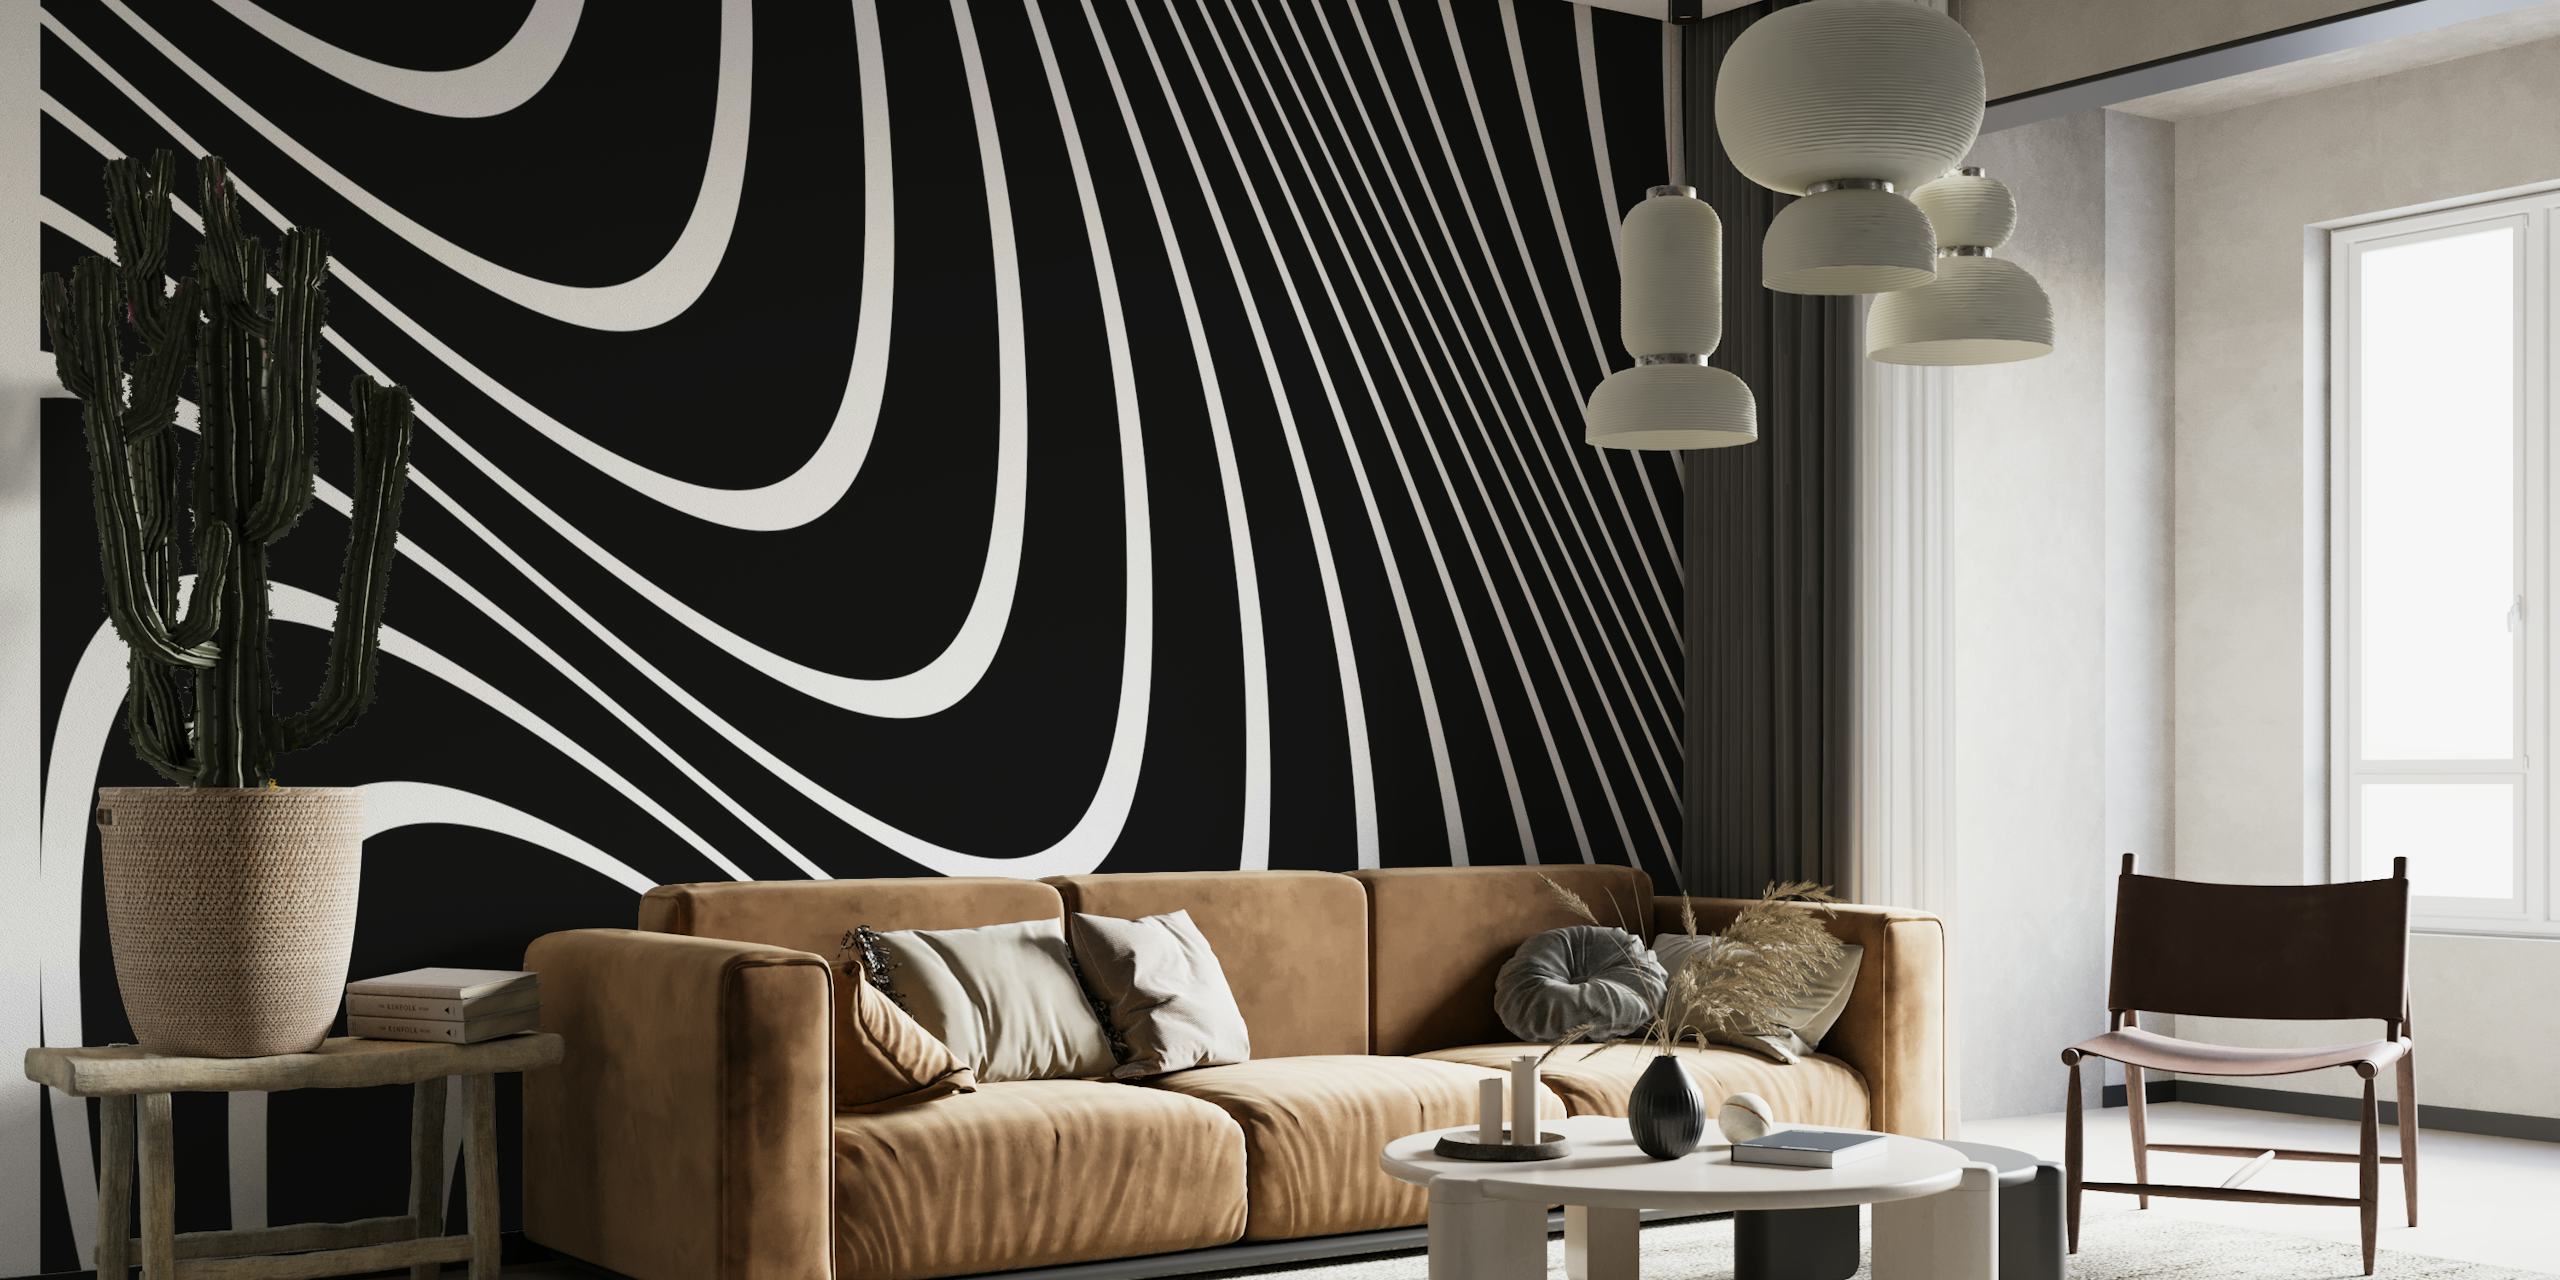 Peinture murale abstraite de lignes noires et blanches pour une décoration murale moderne